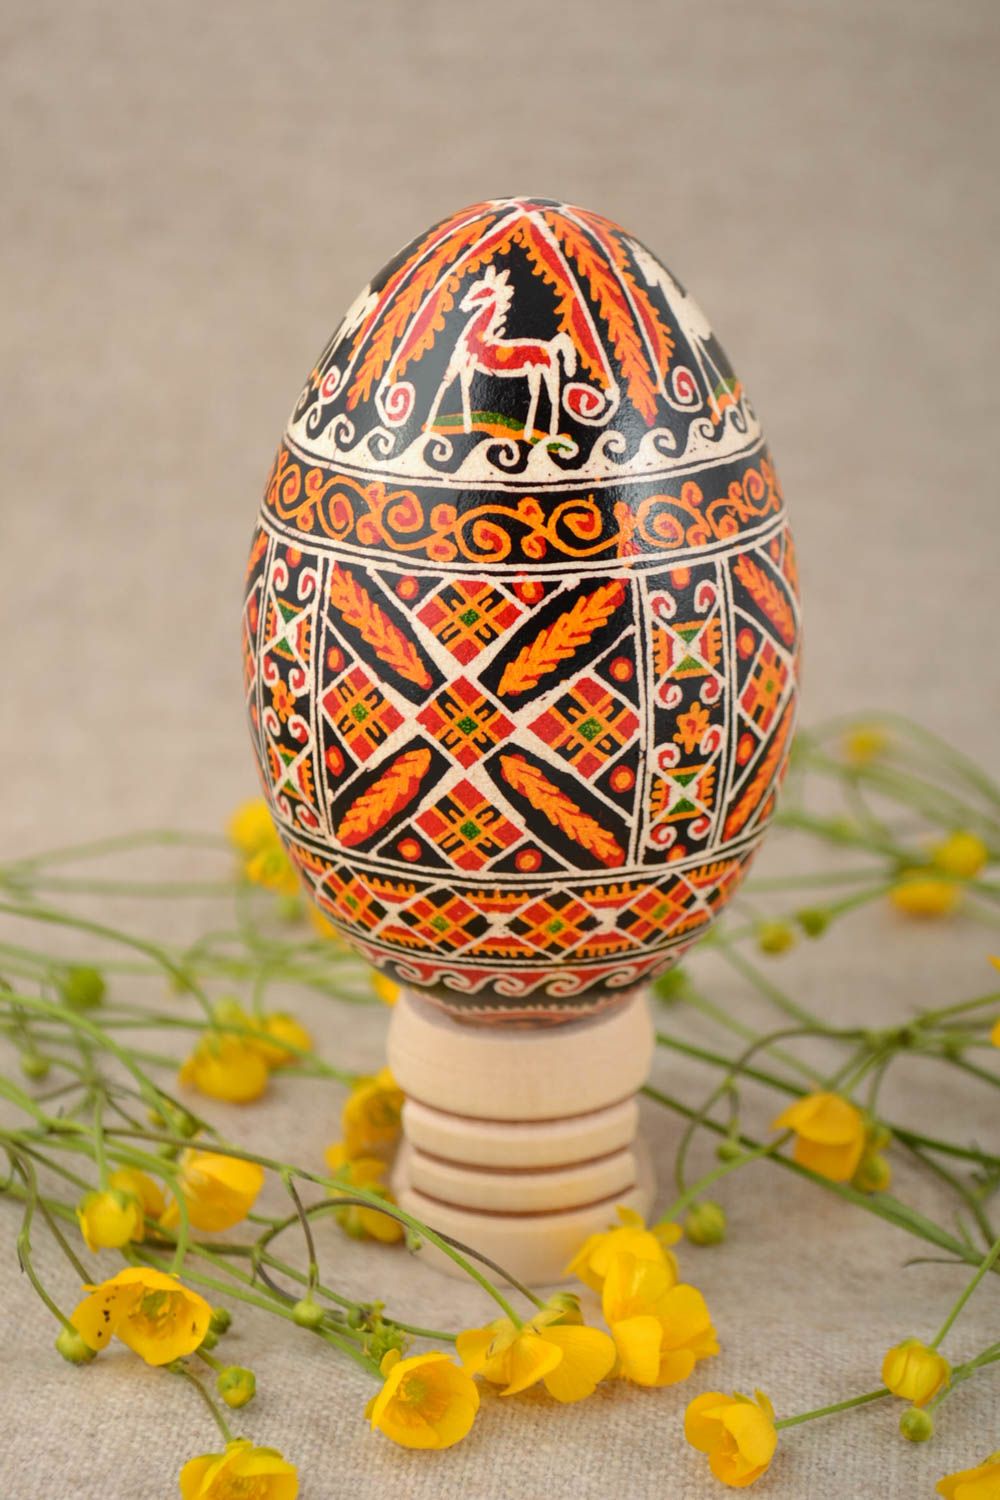 Расписное гусиное яйцо с орнаментом славянская символика цветное ручная работа фото 1